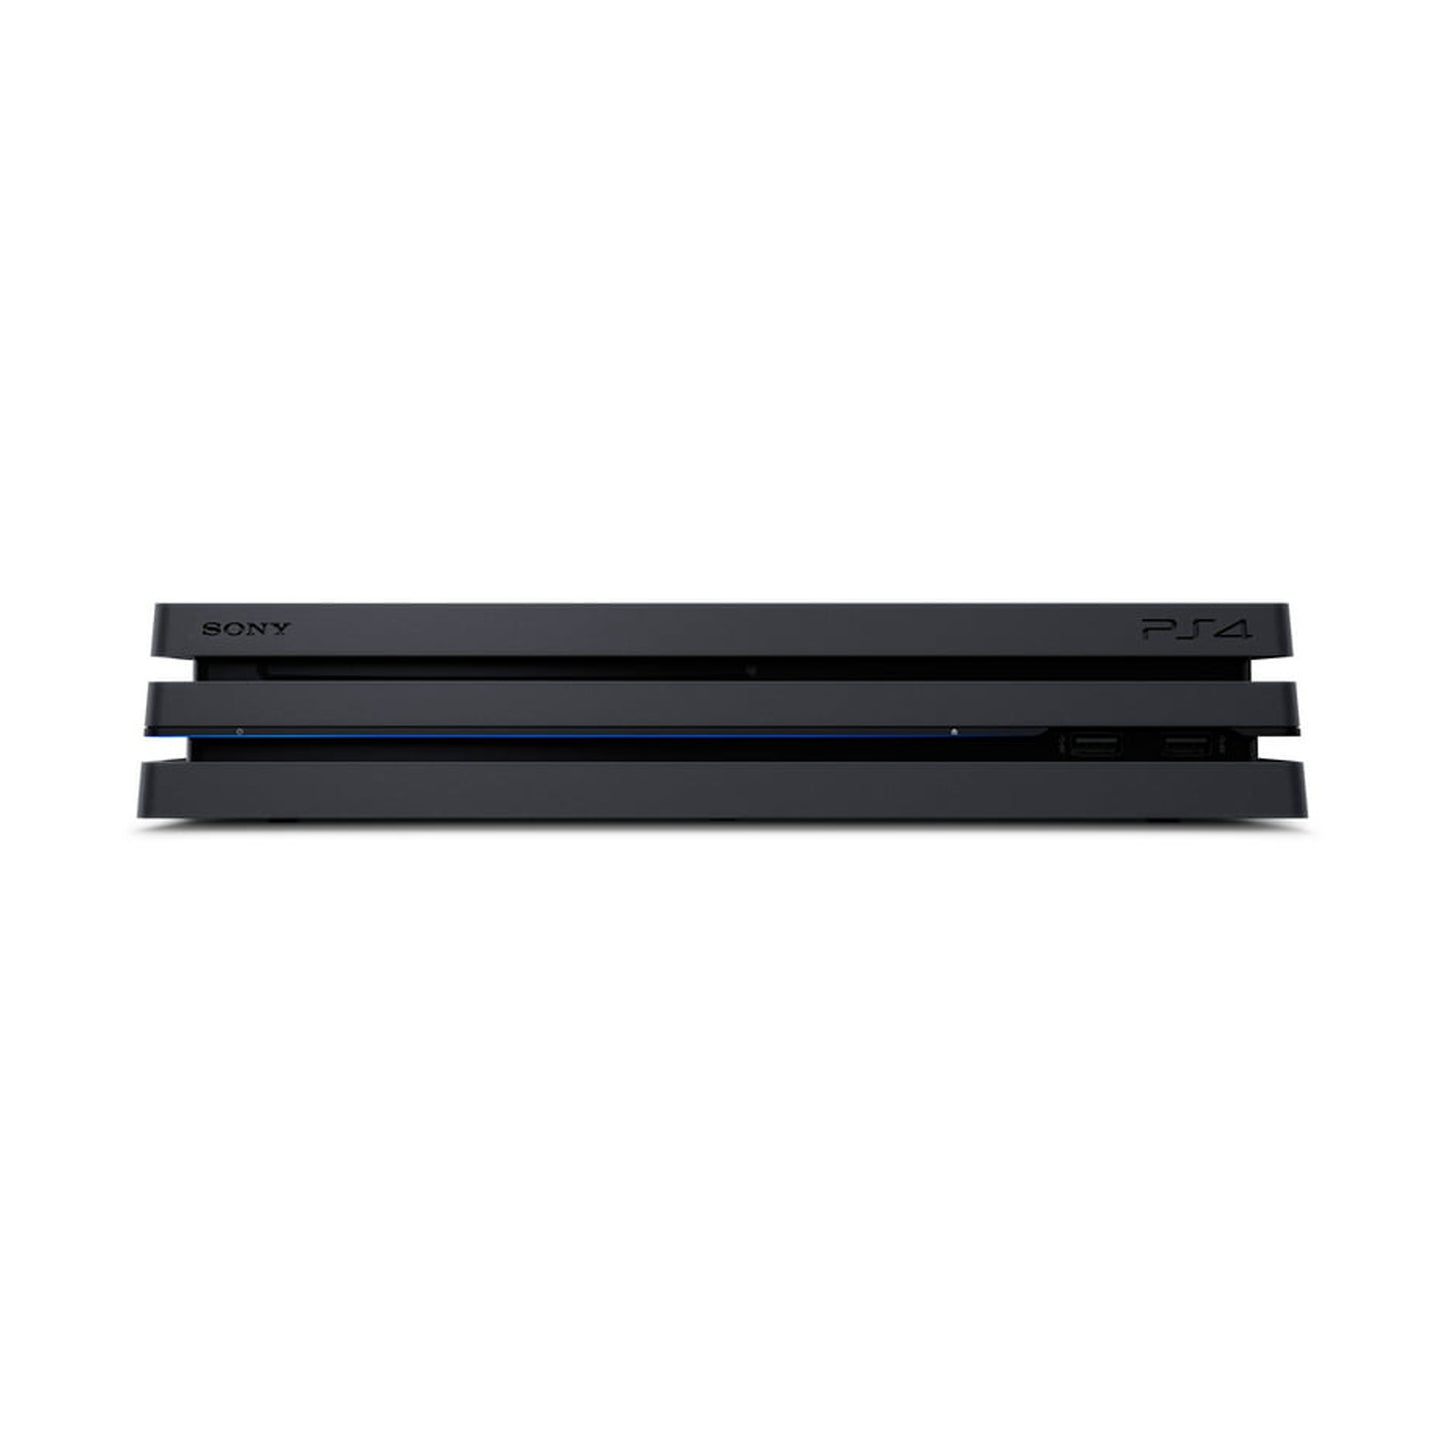 Sony Playstation 4 Pro - 500 GB, PS4 (CUH-7000A B01)